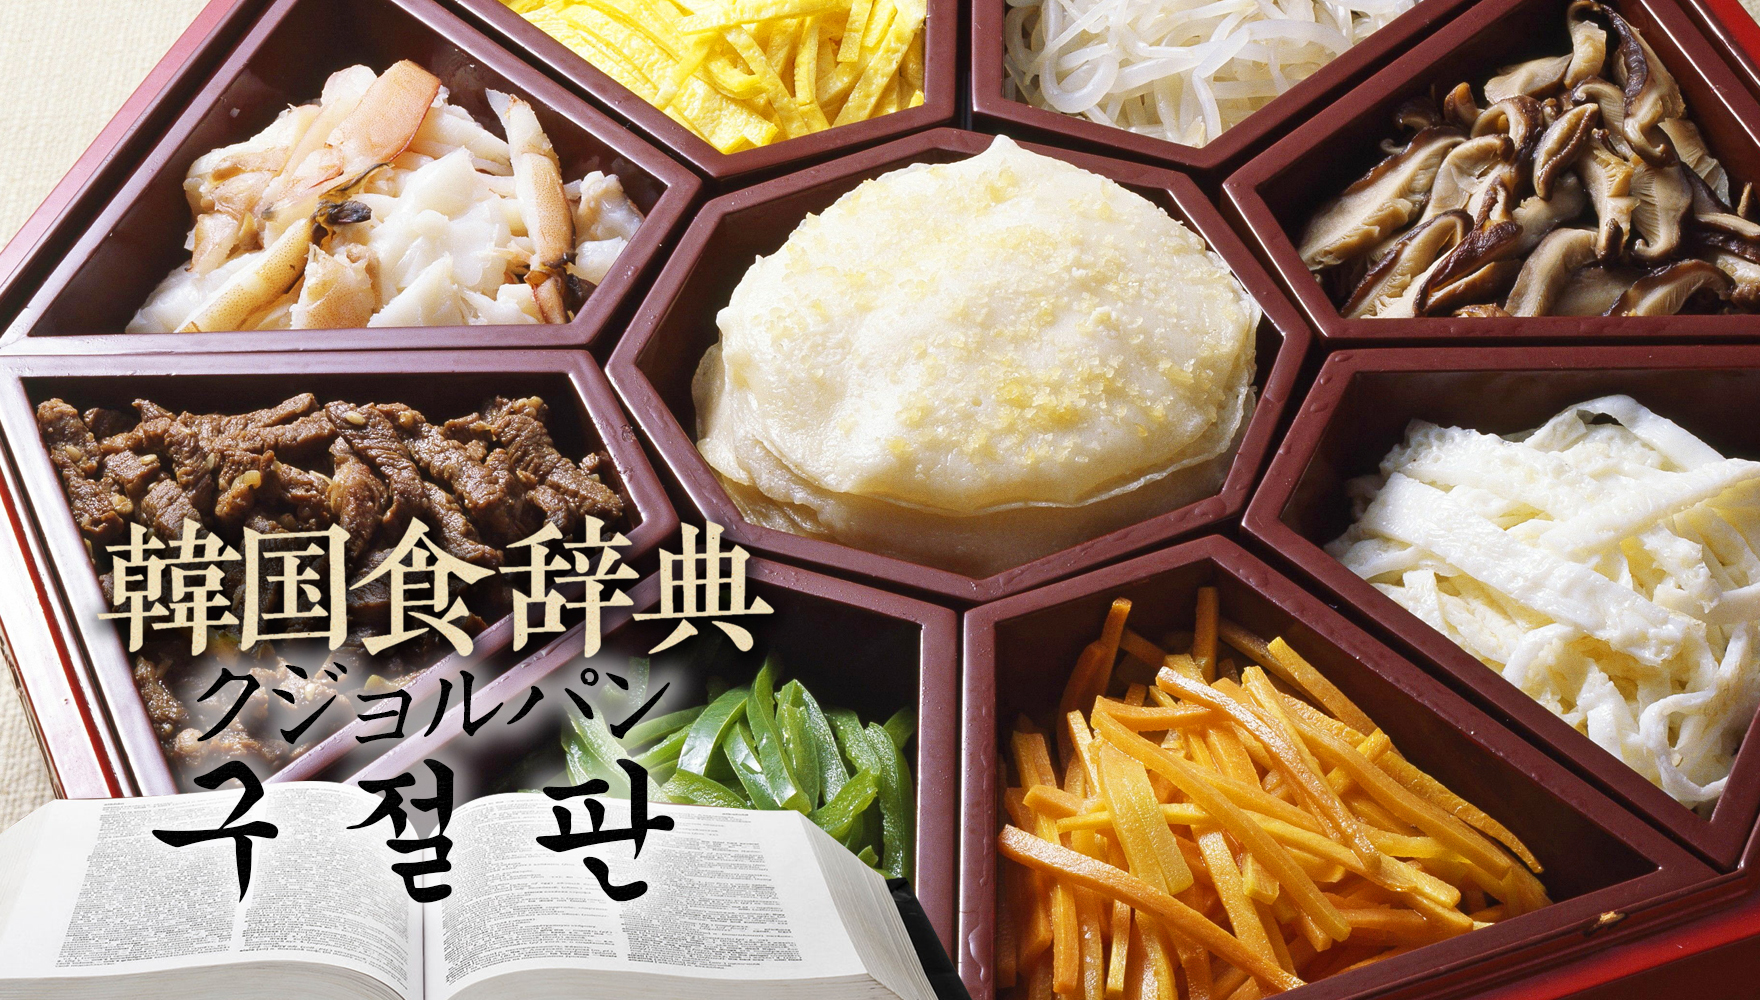 韓国食辞典「クジョルパン」